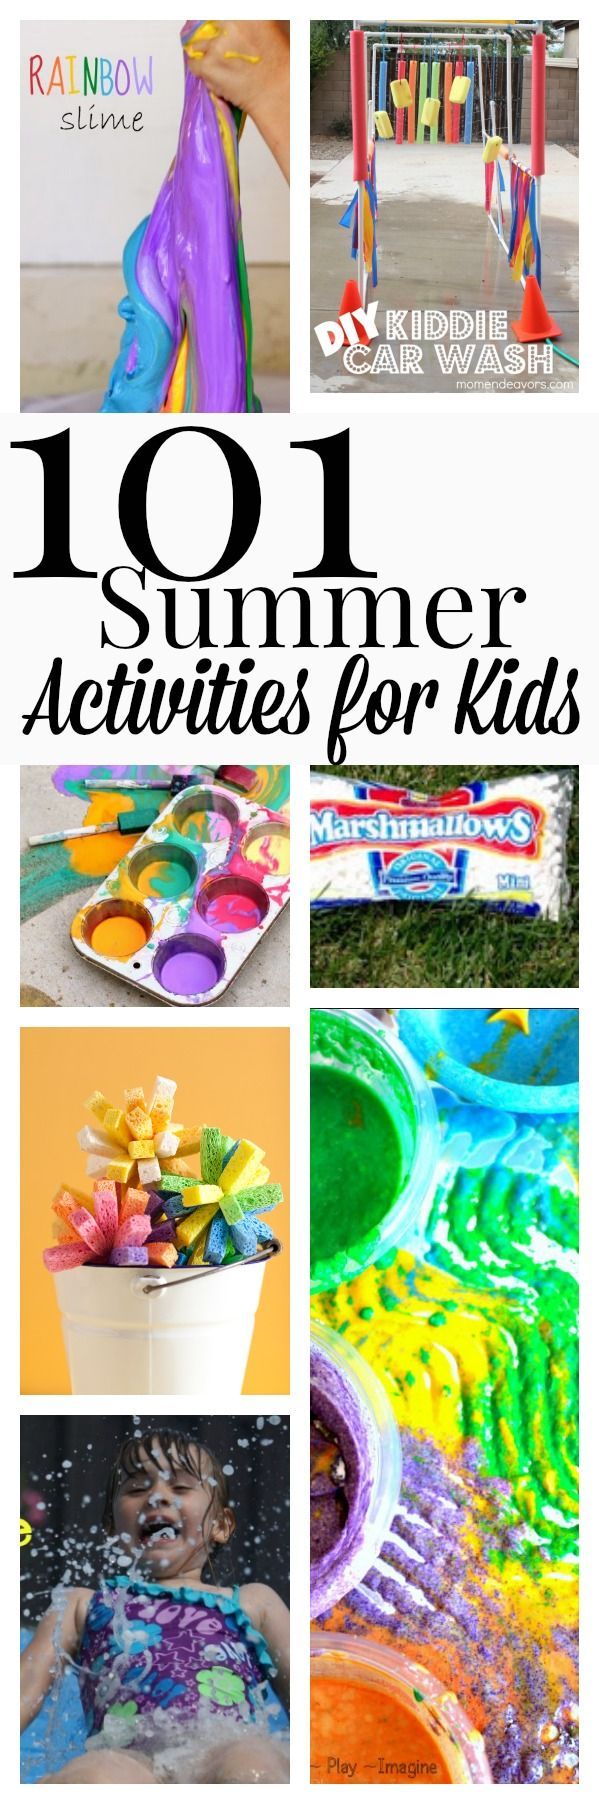 101 Summer Activities for k